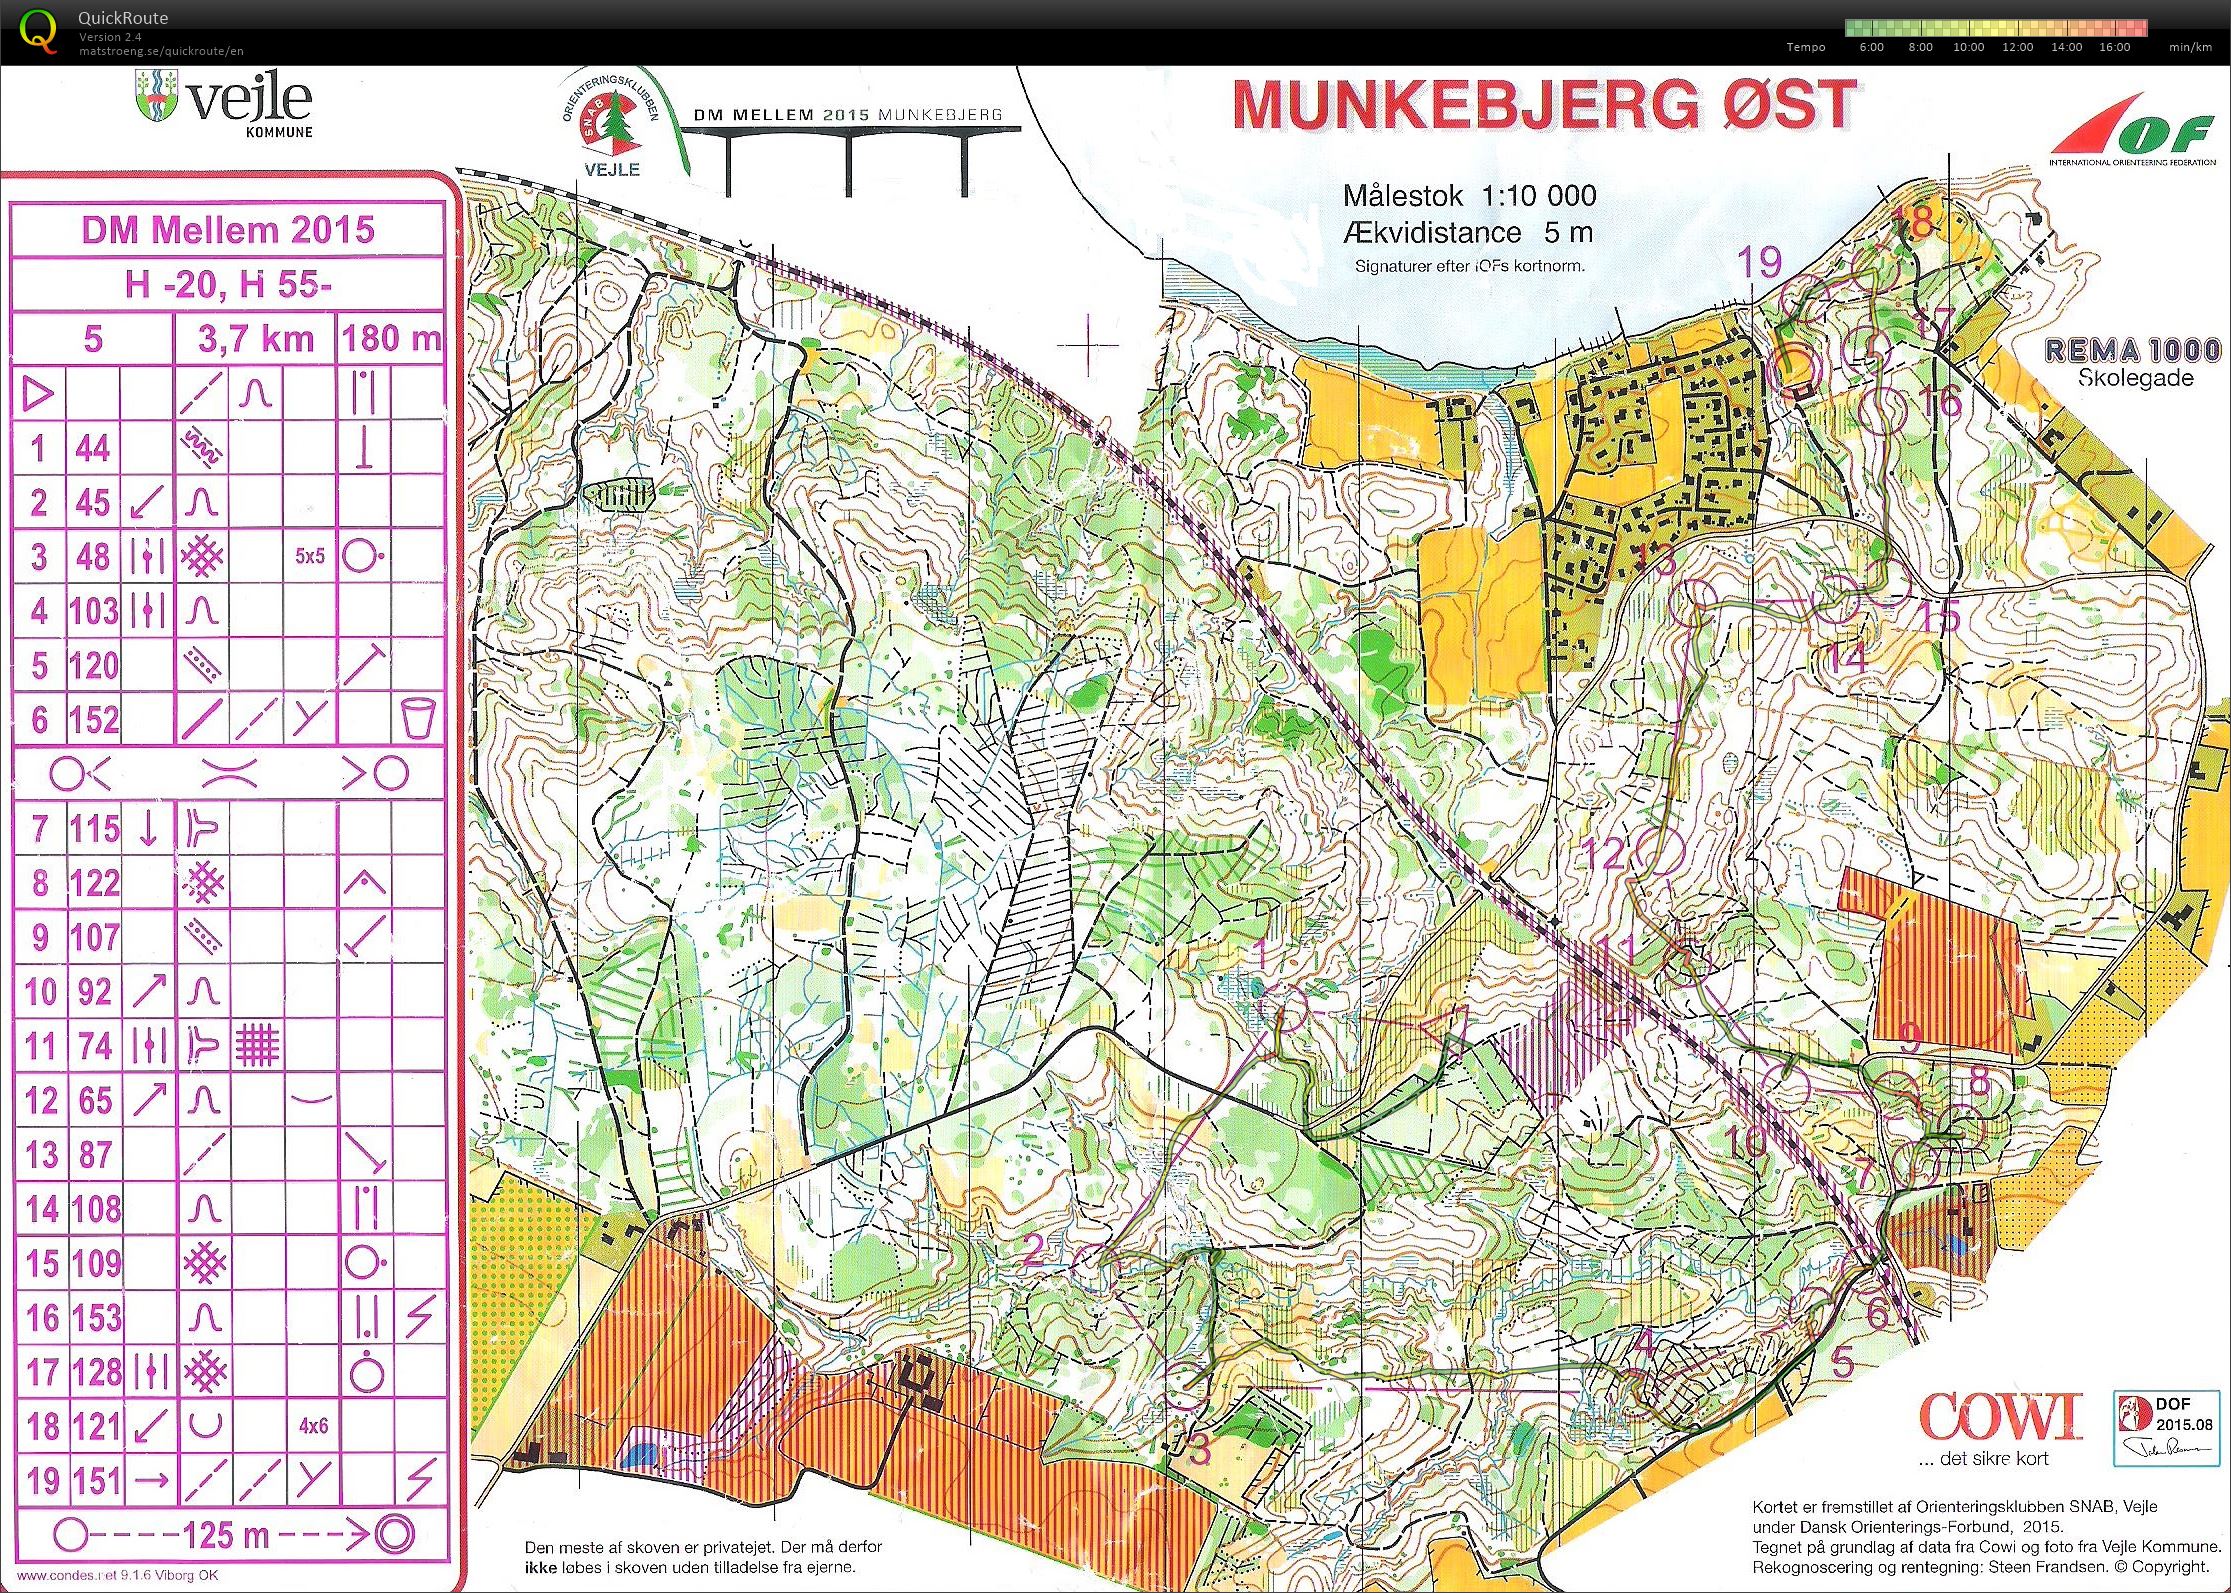 DM Mellem H55 Munkebjerg Øst (2015-08-29)